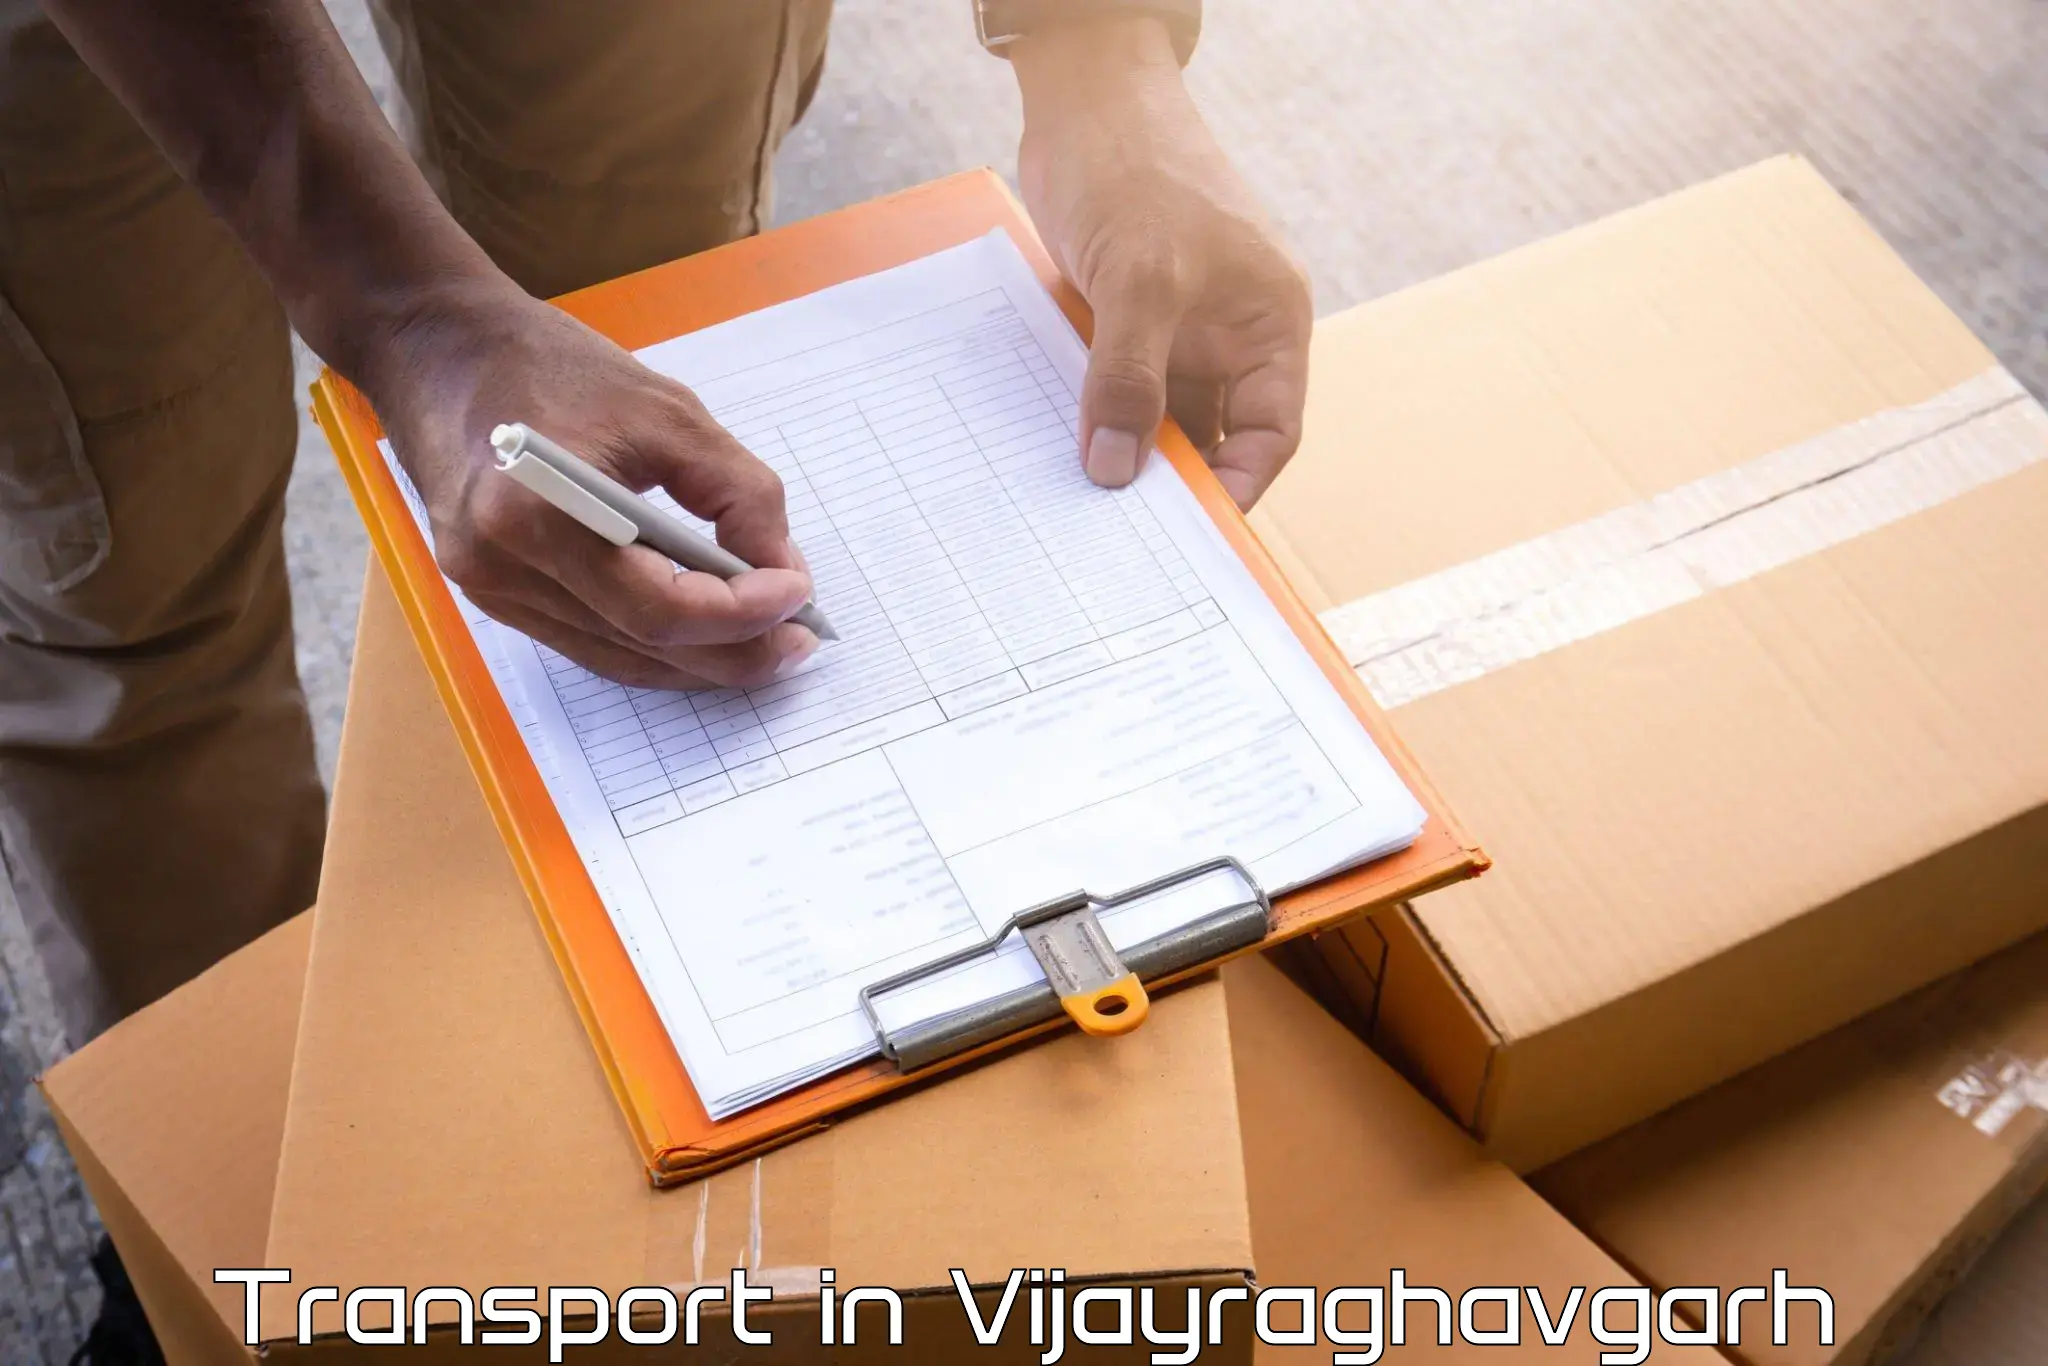 Transportation services in Vijayraghavgarh